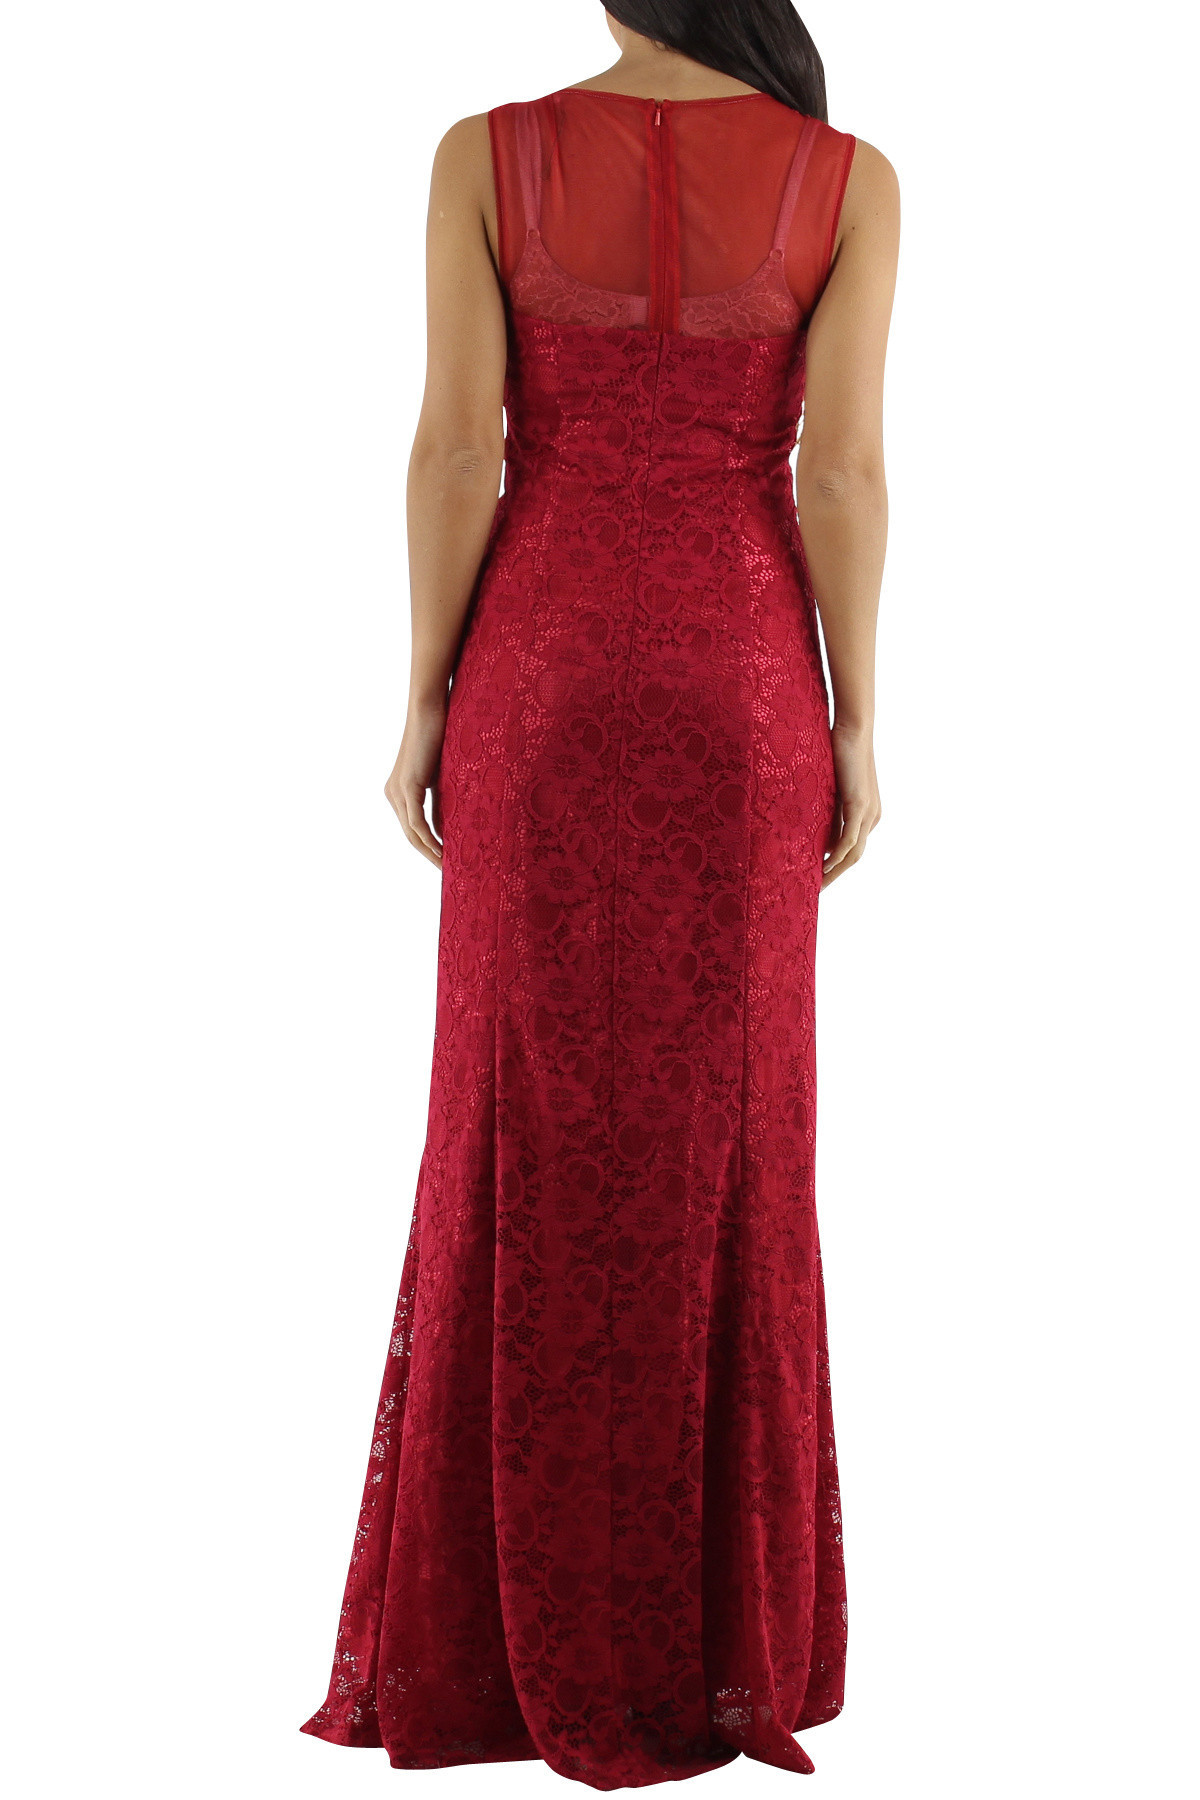 Společenské a šaty krajkové dlouhé Paris červené Červená Paris XS model 15042343 - CHARM&#39;S Paris